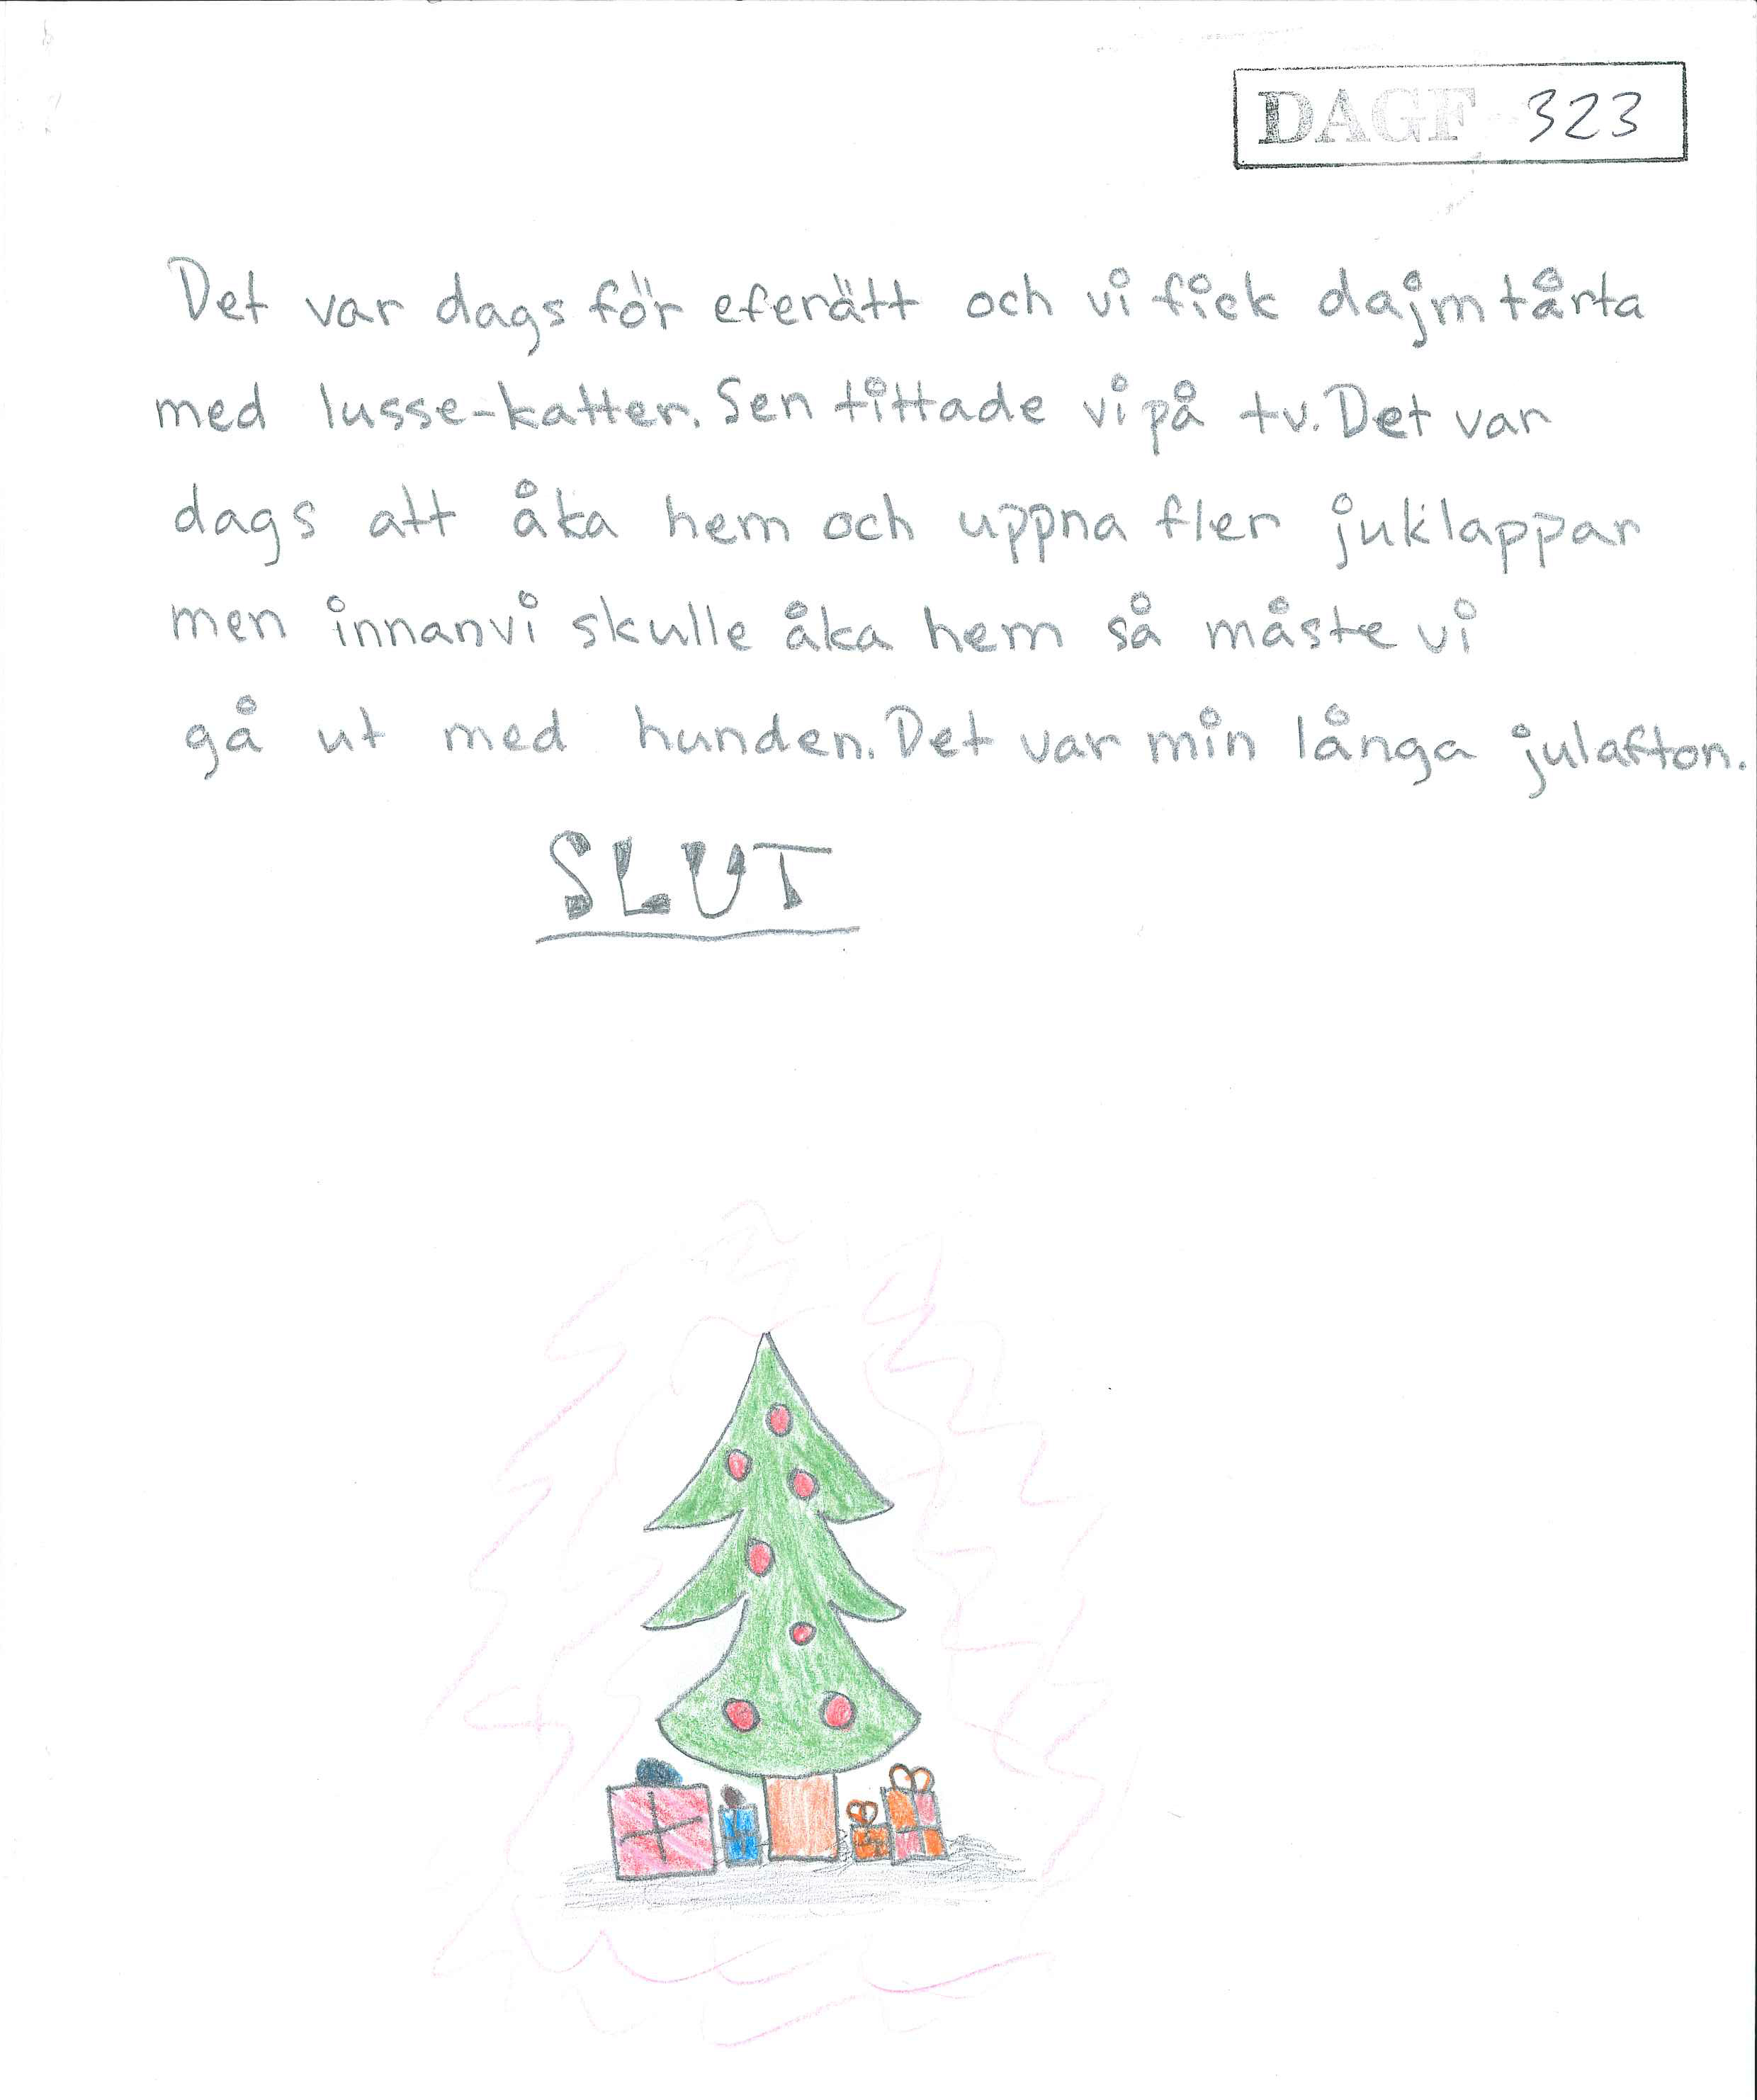 A4-papper med handskriven text och längst ned en teckning föreställande en julgran med röda julgranskulor, och flera inslagna paket som ligger under granen.